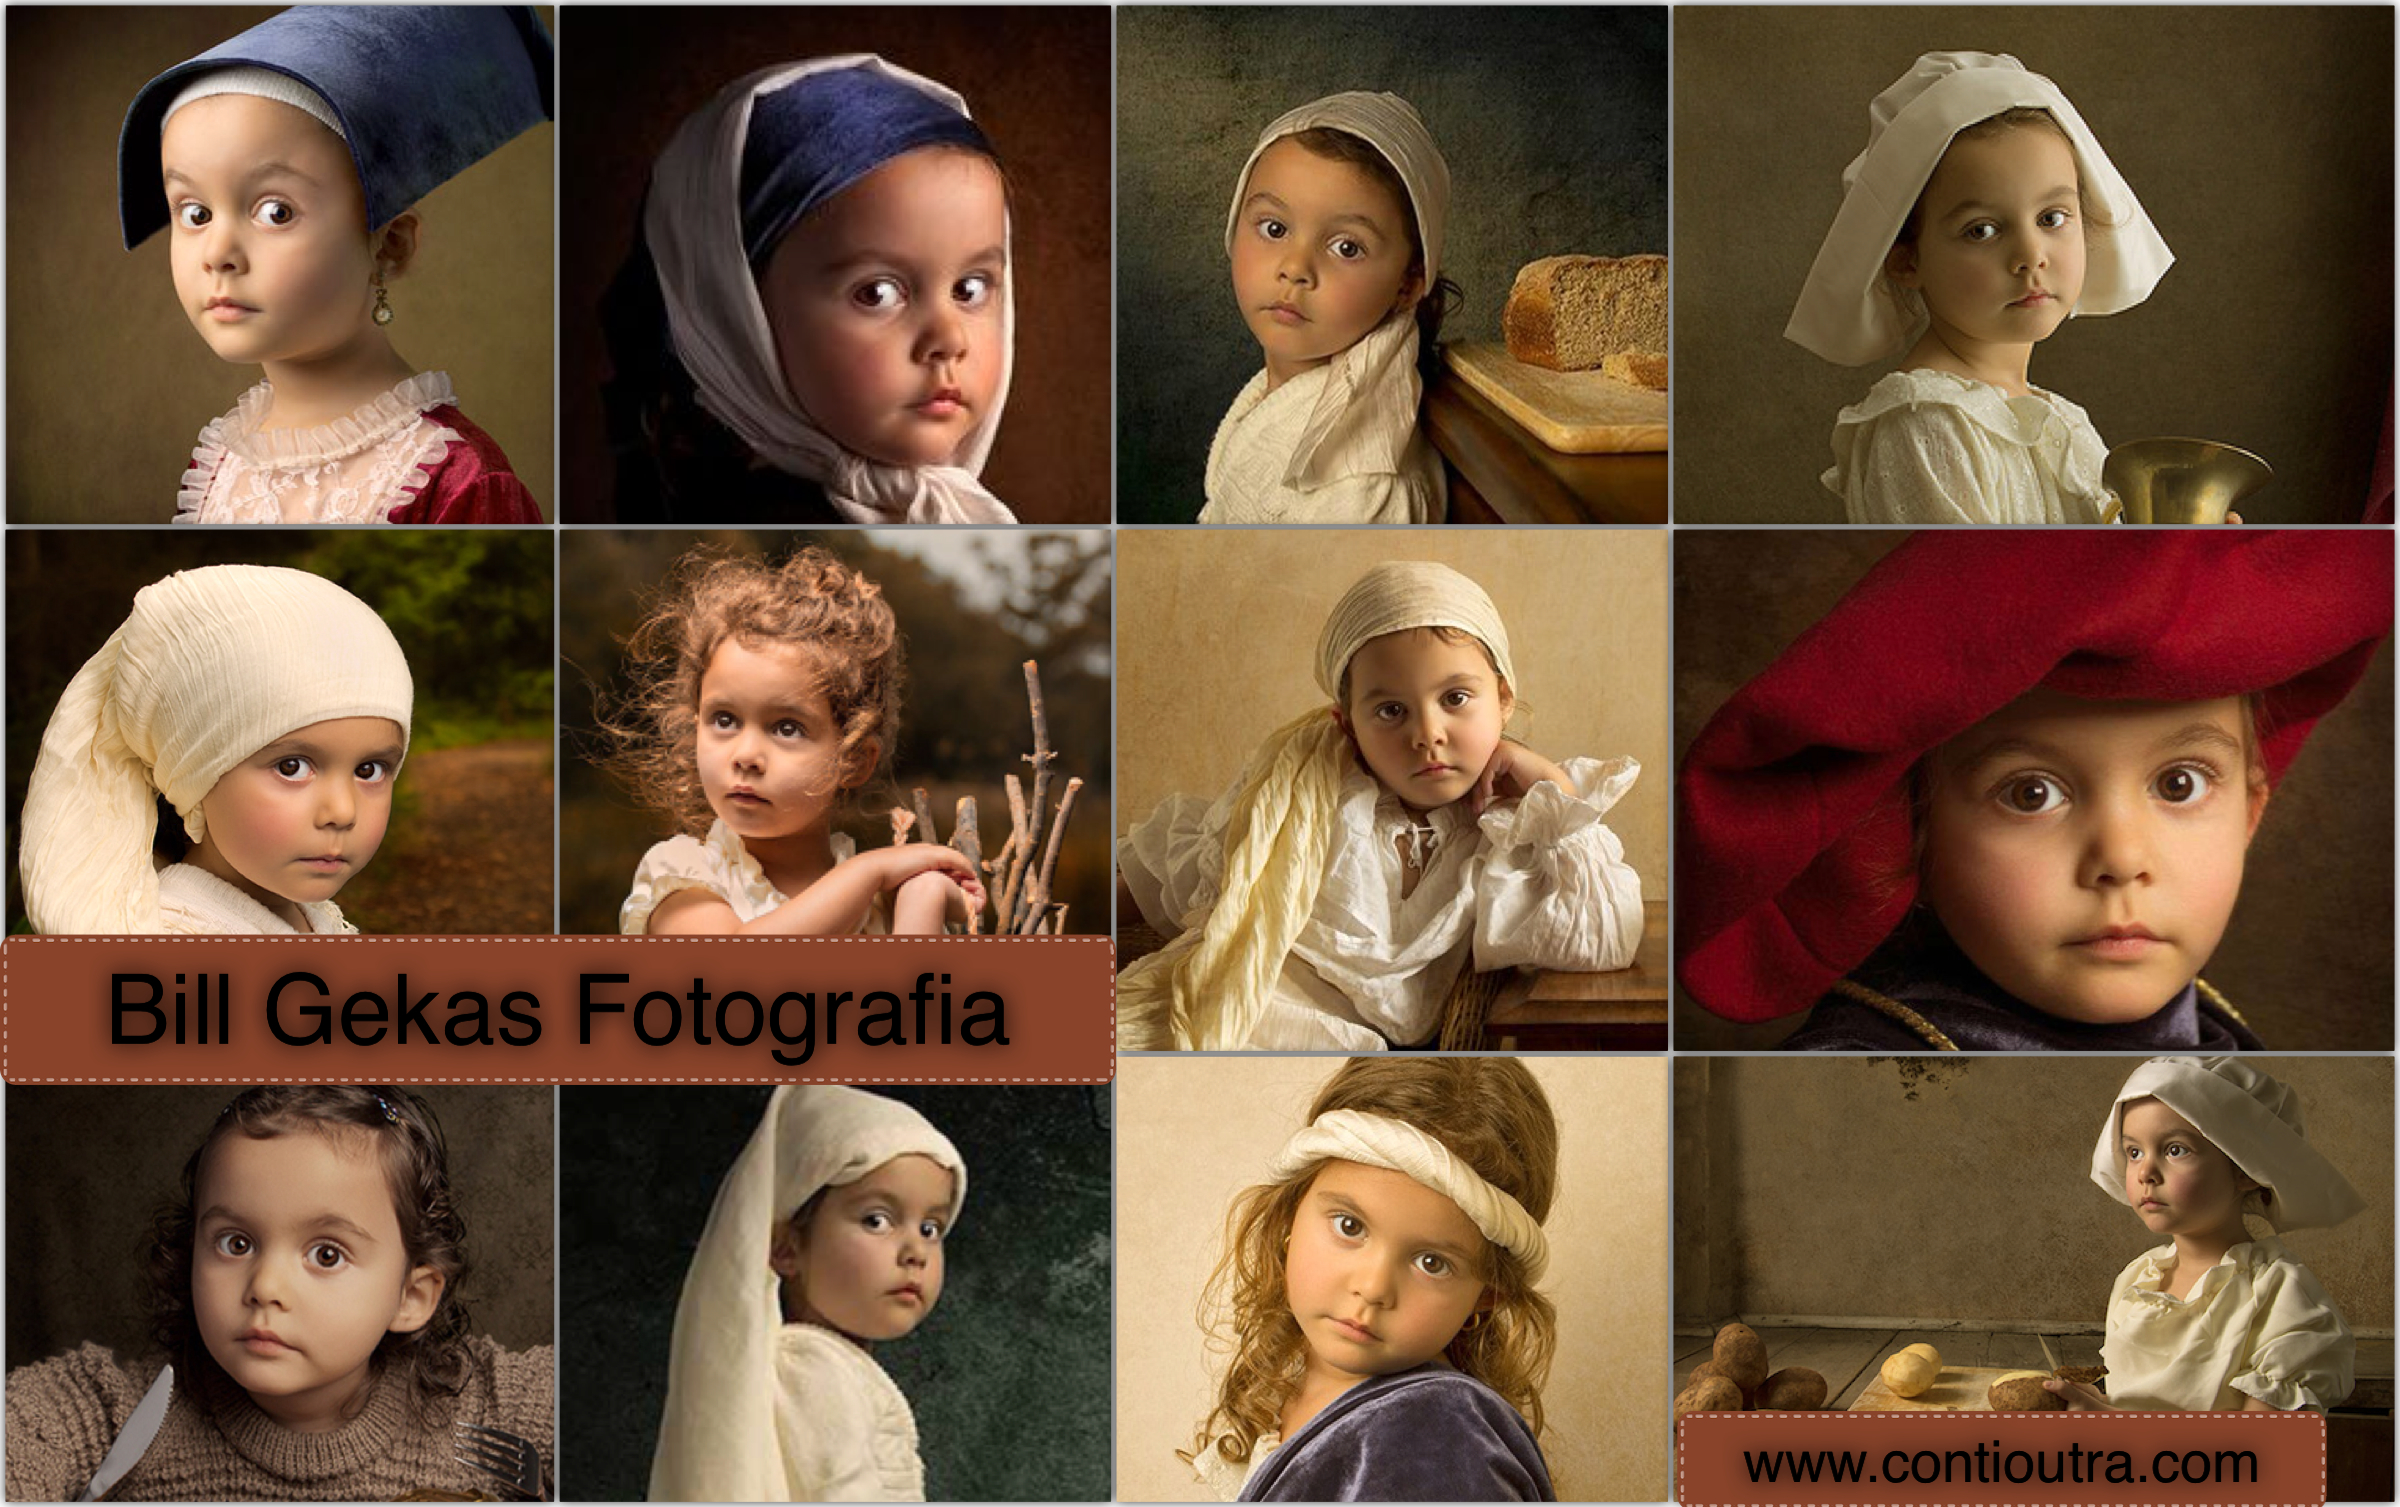 contioutra.com - Fotógrafo recria pinturas clássicas com filha de cinco anos